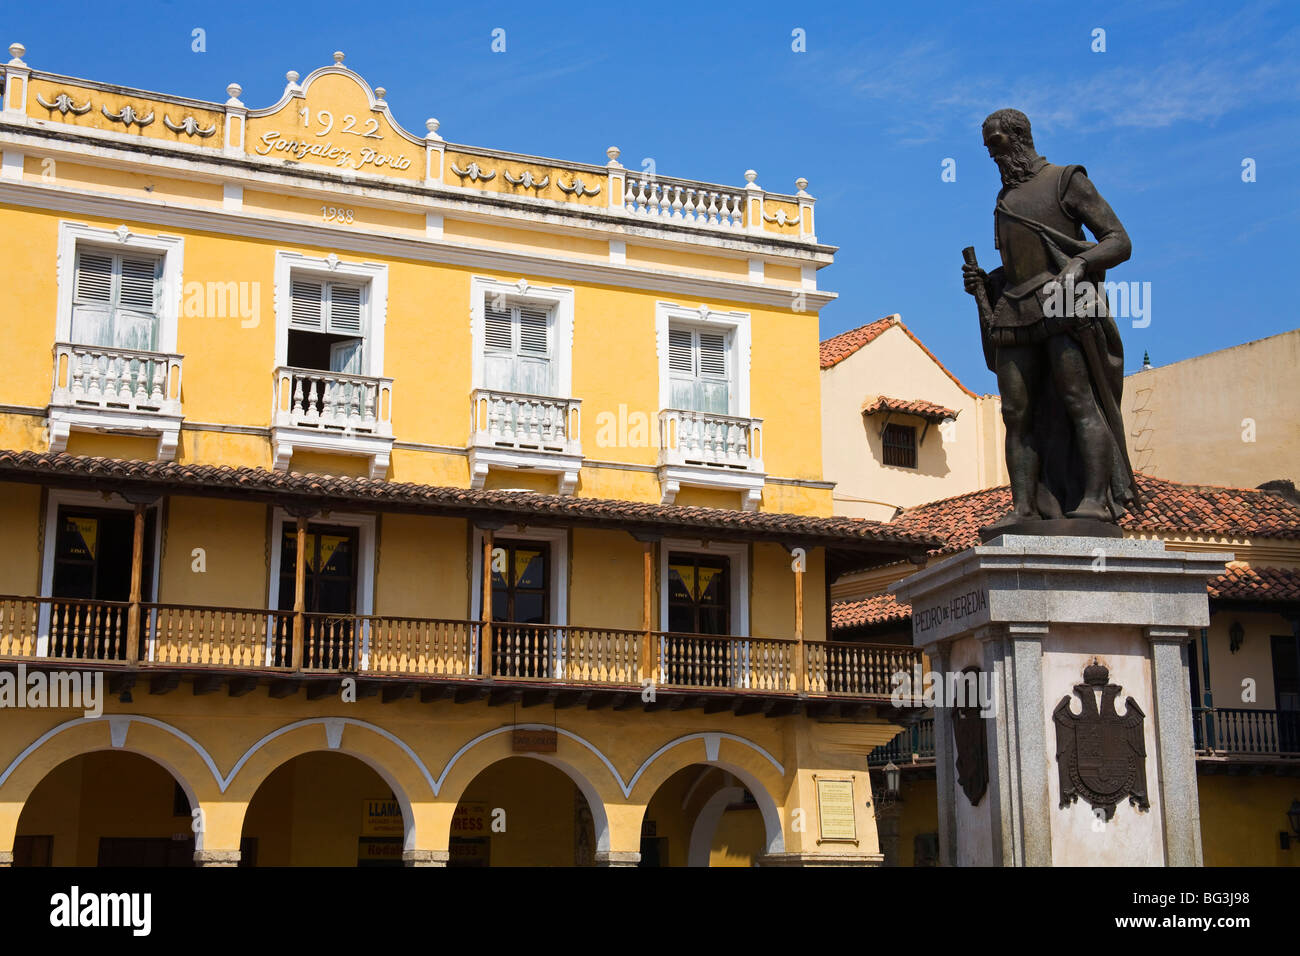 Estatua de Pedro de Heredia en la Plaza de Los Coches, antigua ciudad amurallada, distrito de la ciudad de Cartagena, Estado Bolívar, Colombia Foto de stock